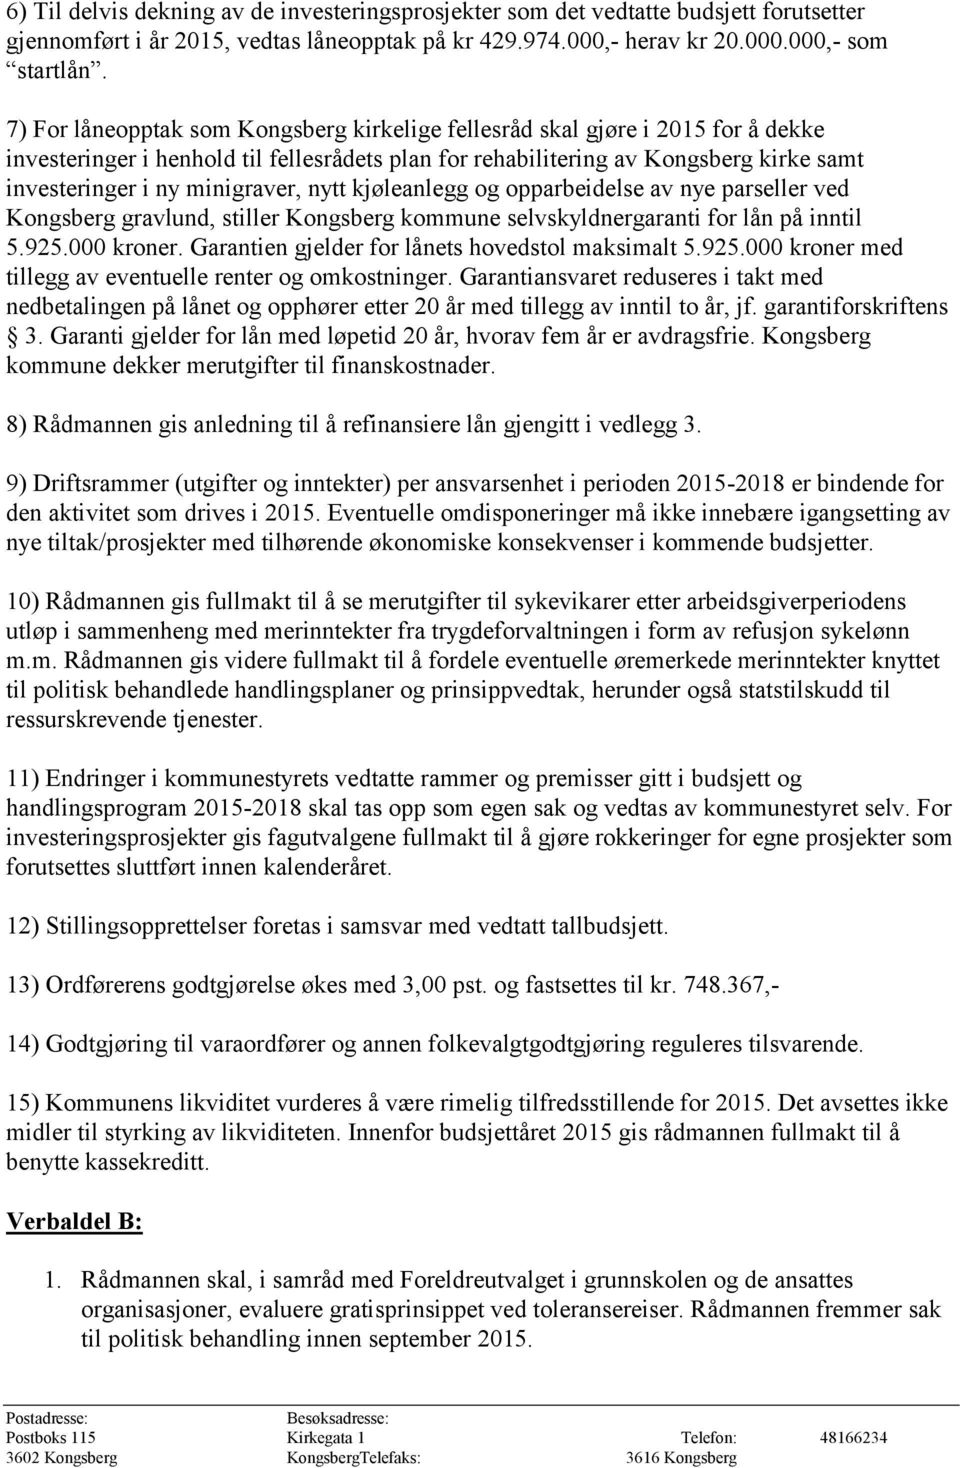 minigraver, nytt kjøleanlegg og opparbeidelse av nye parseller ved Kongsberg gravlund, stiller Kongsberg kommune selvskyldnergaranti for lån på inntil 5.925.000 kroner.